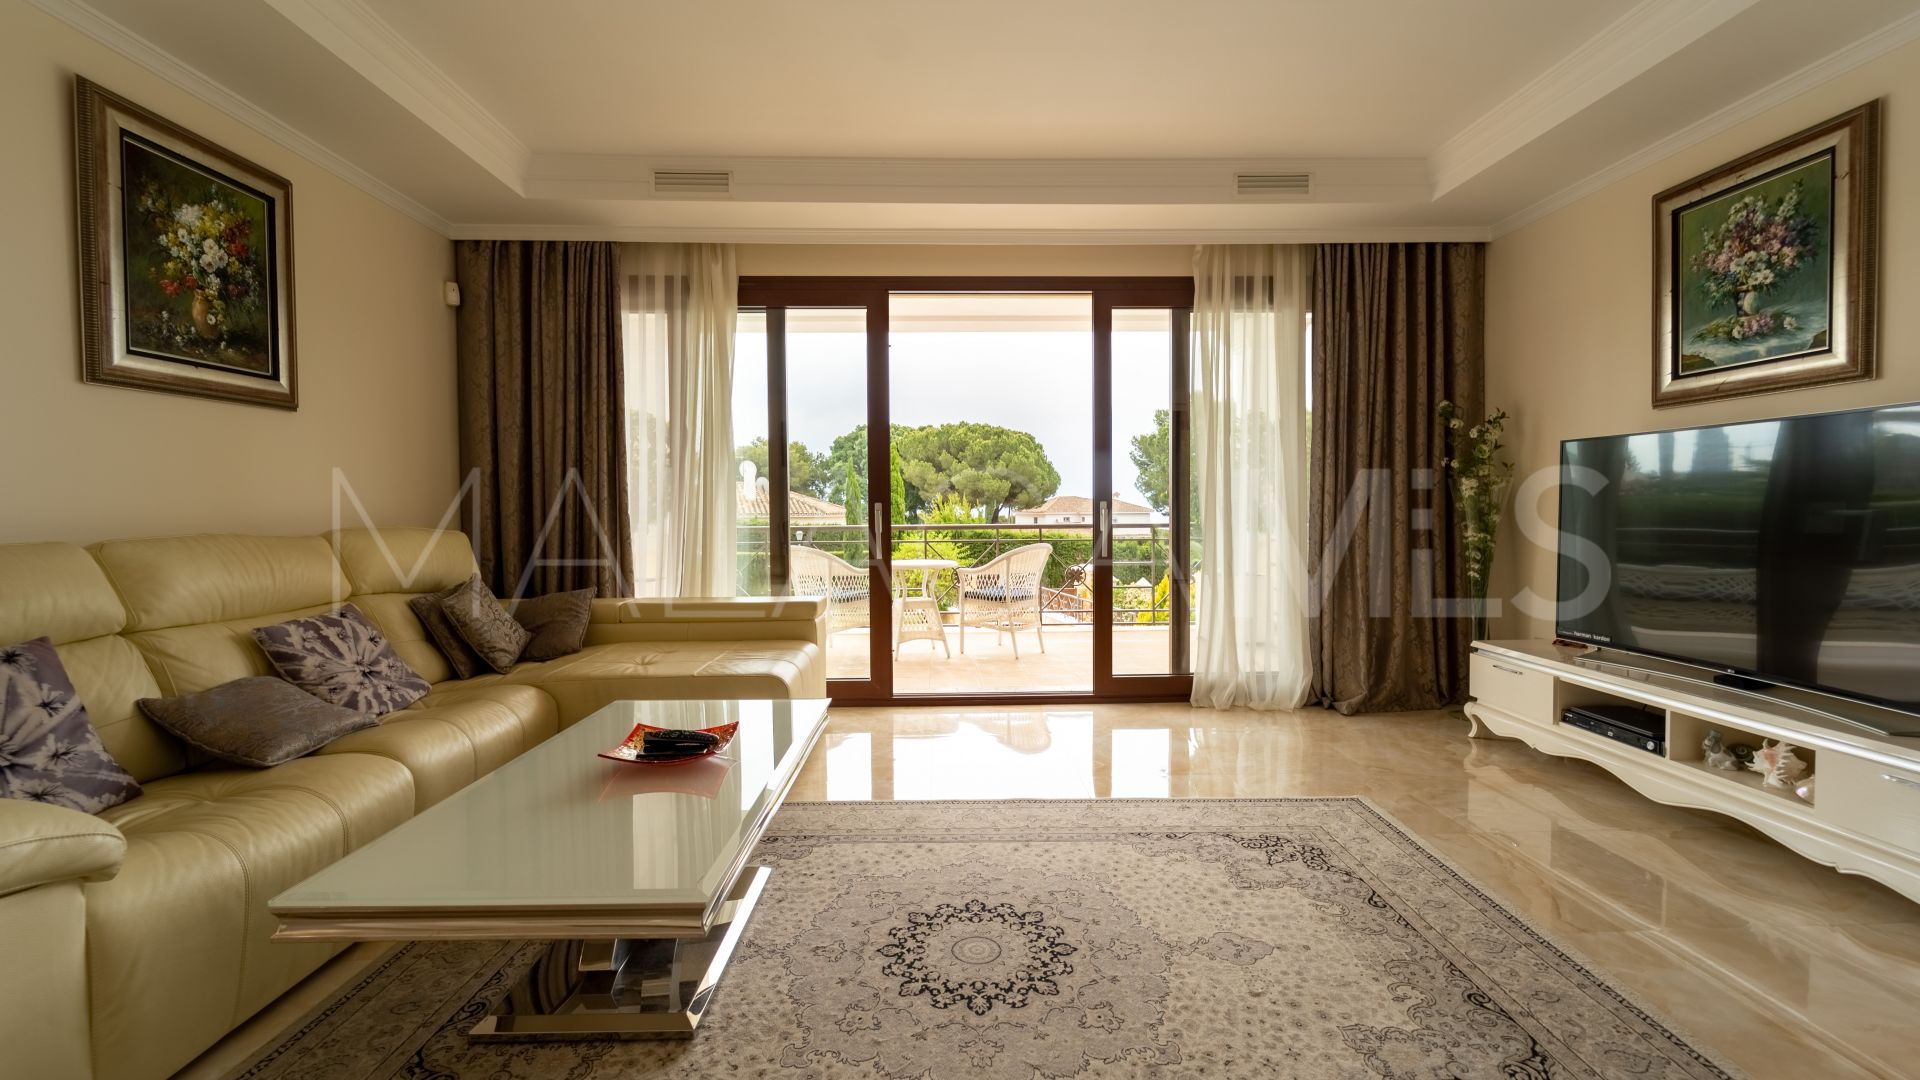 Marbella Este, villa de 4 bedrooms for sale